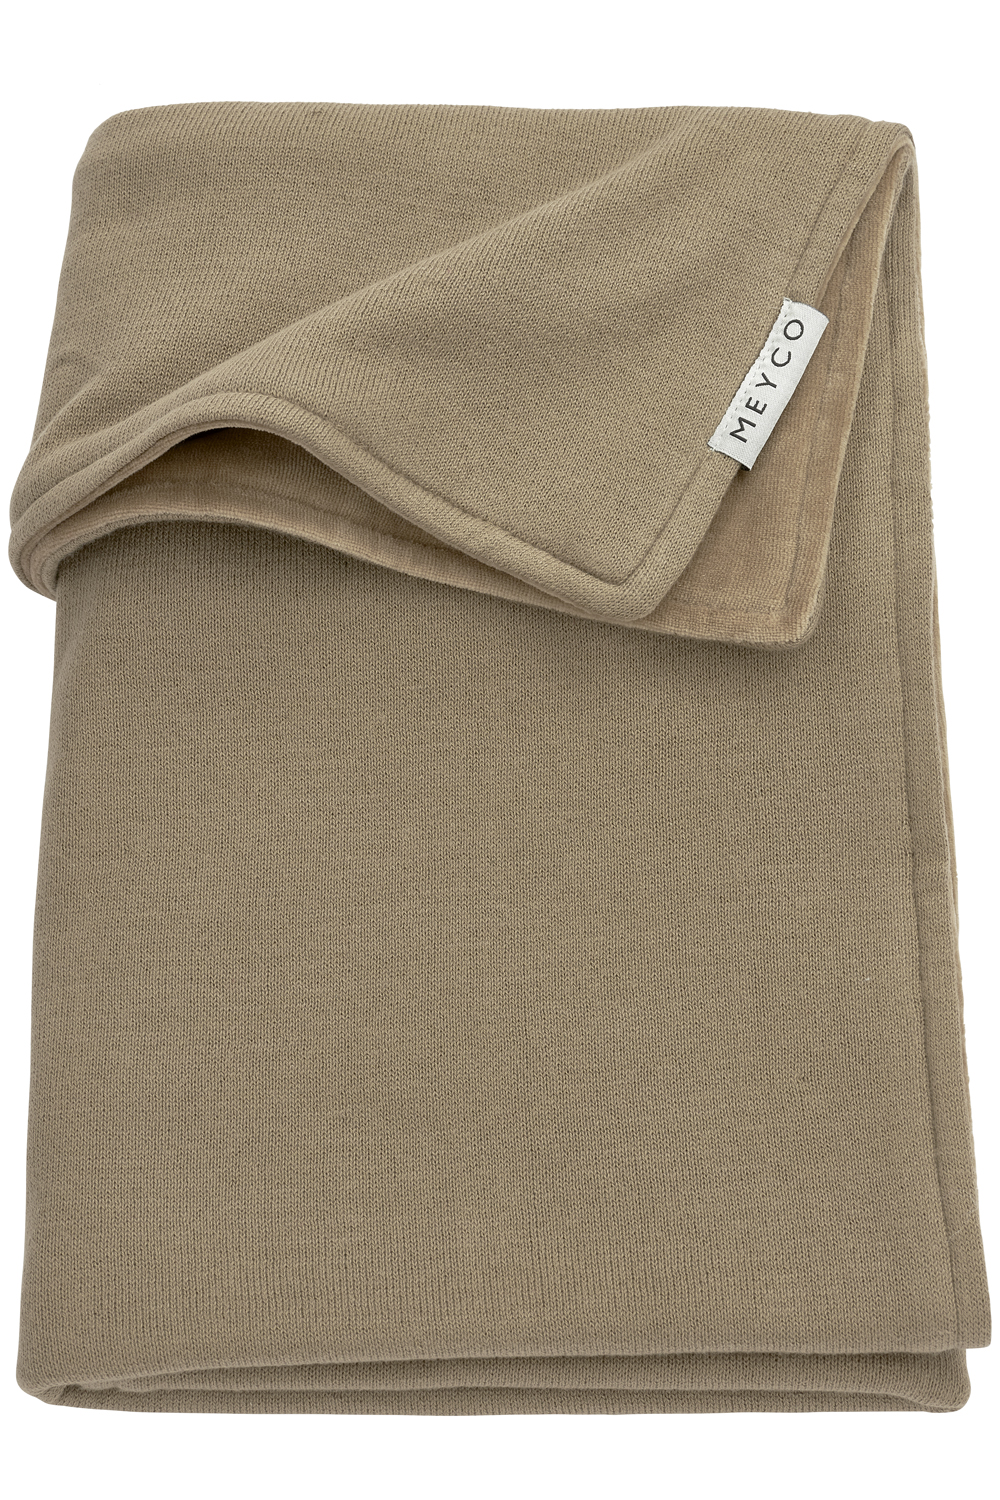 Crib bed blanket Knit Basic velvet - taupe - 75x100cm